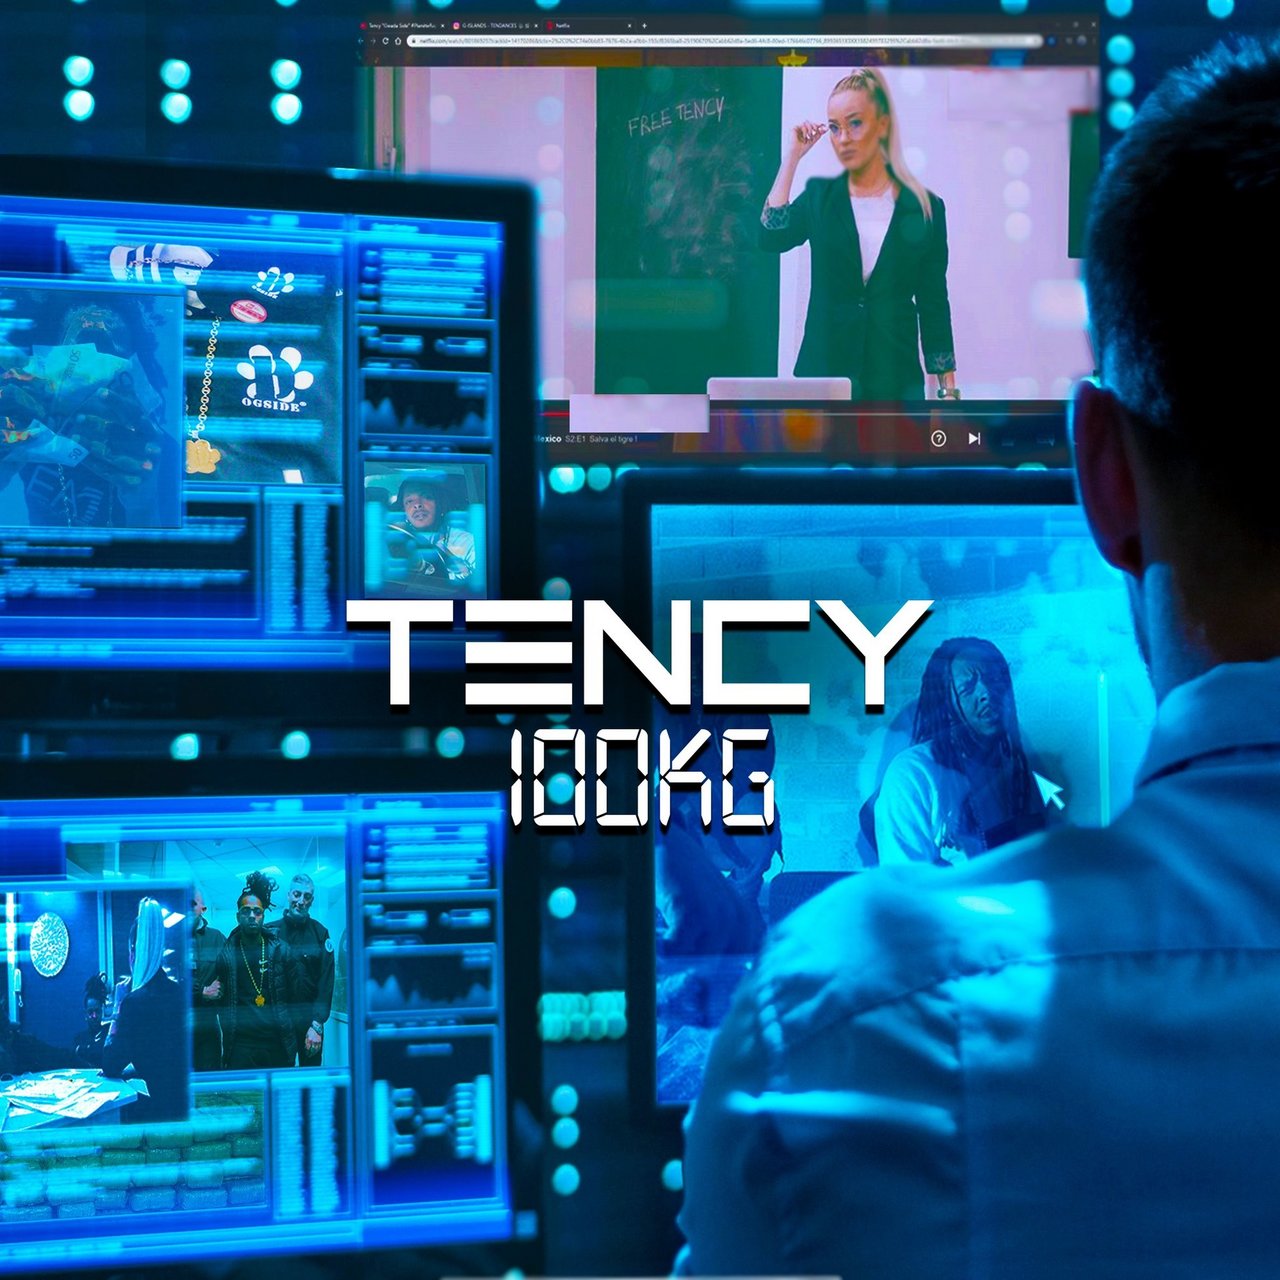 Tency - 100 Kg (Cover)